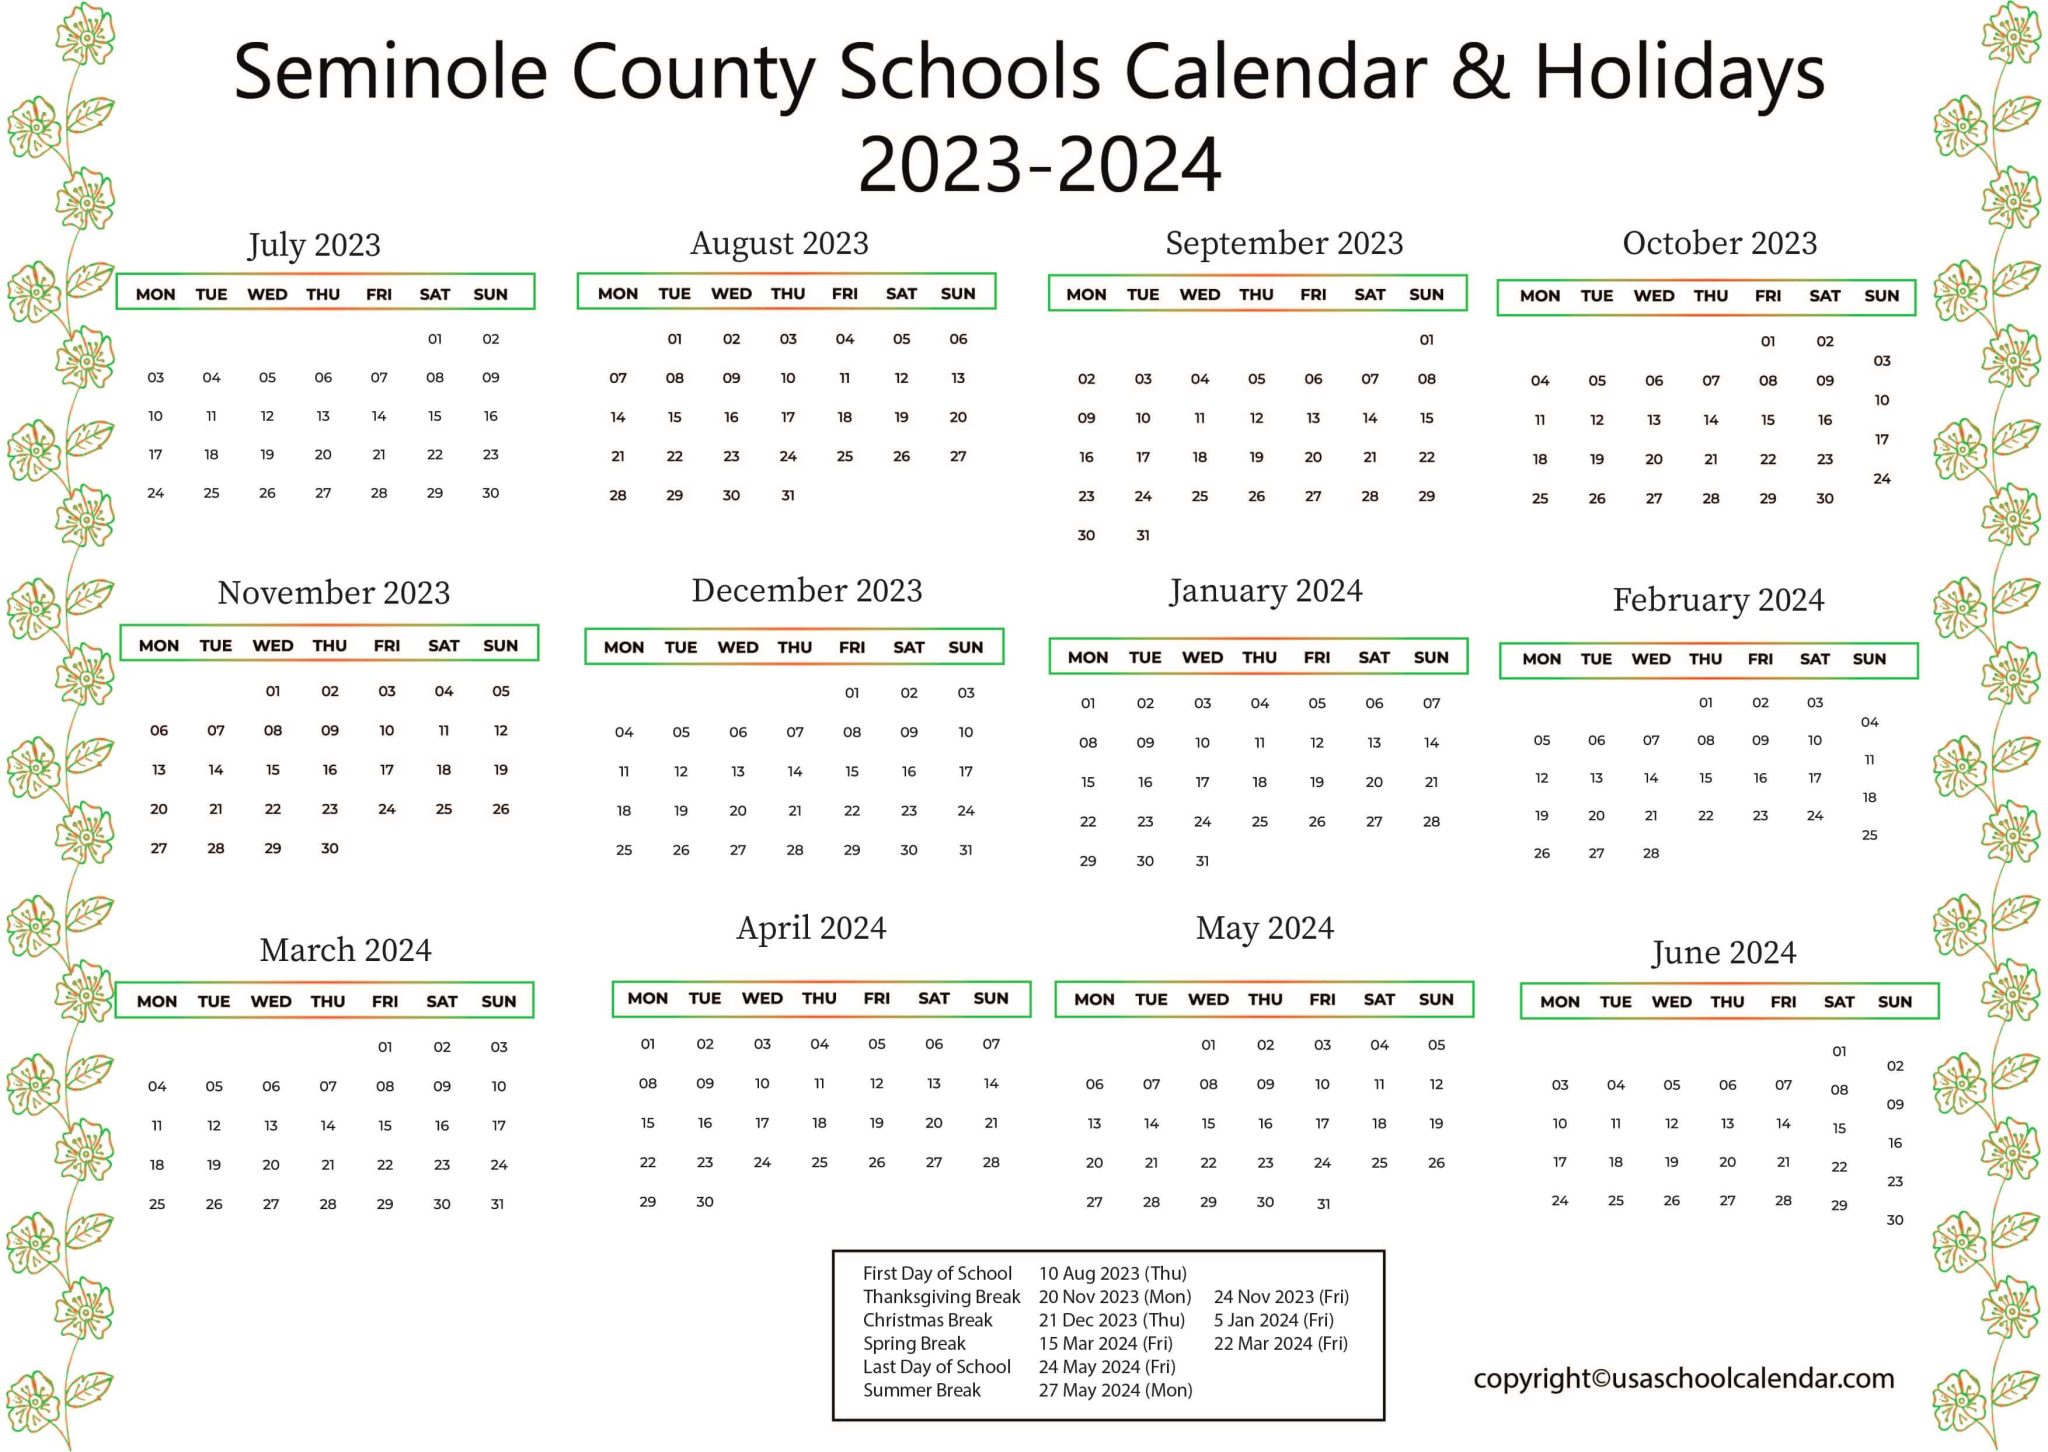 seminole-county-schools-calendar-holidays-2023-2024